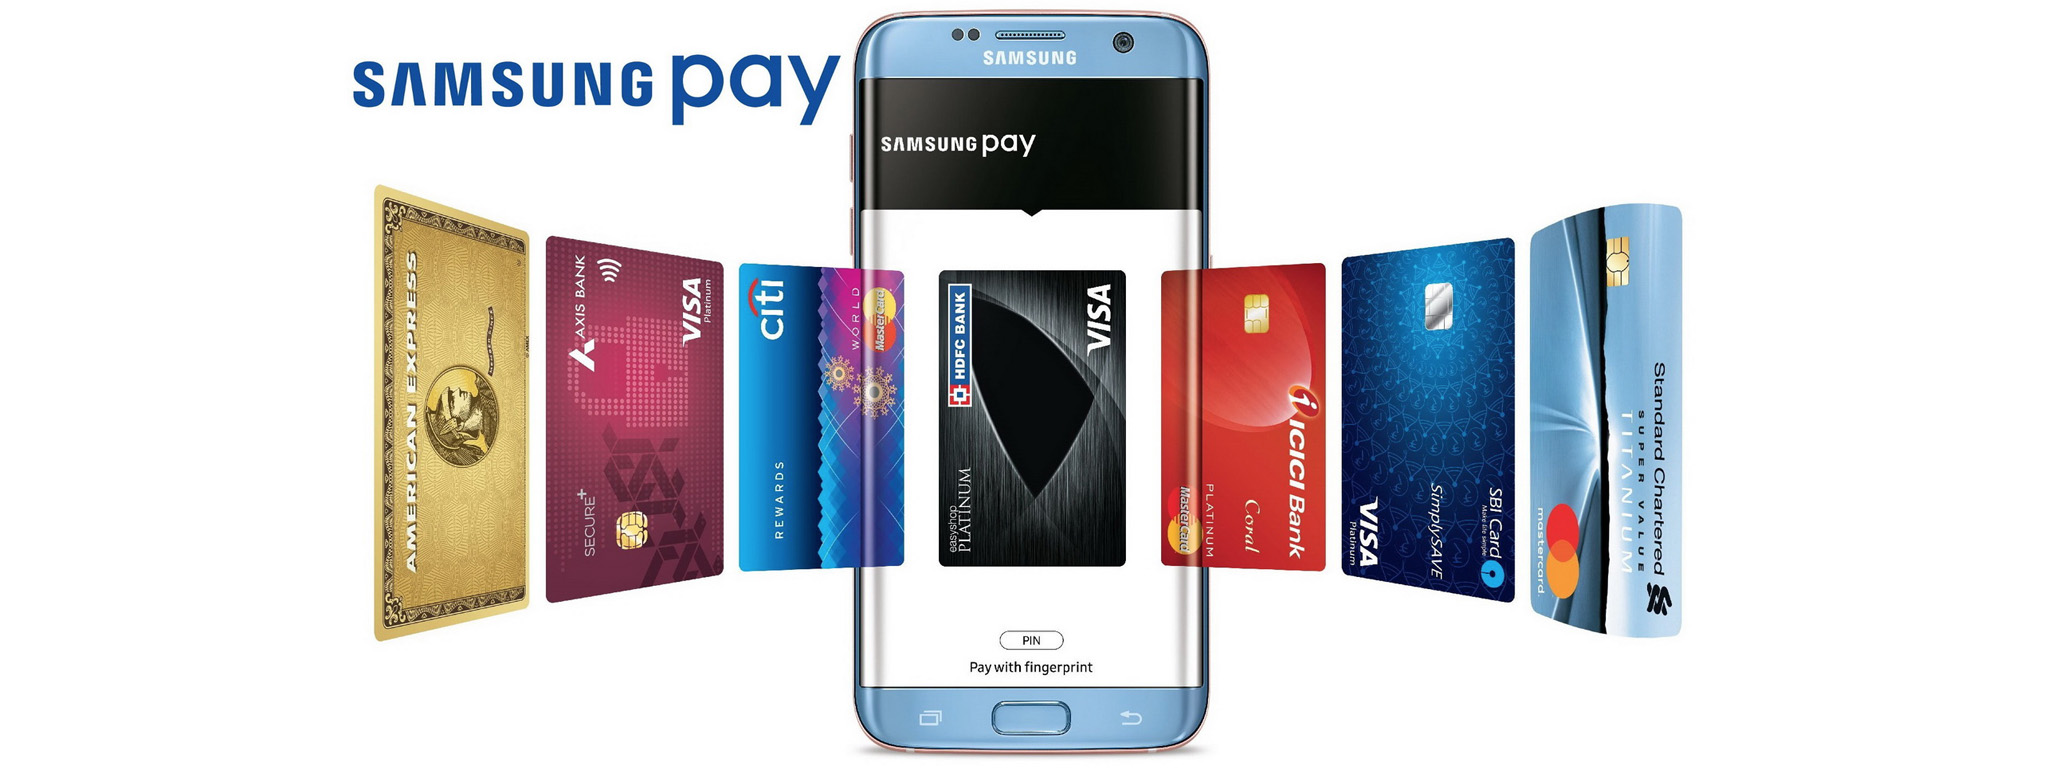 Samsung Pay có khả năng sẽ được tích hợp vào điện thoại của những hãng khác